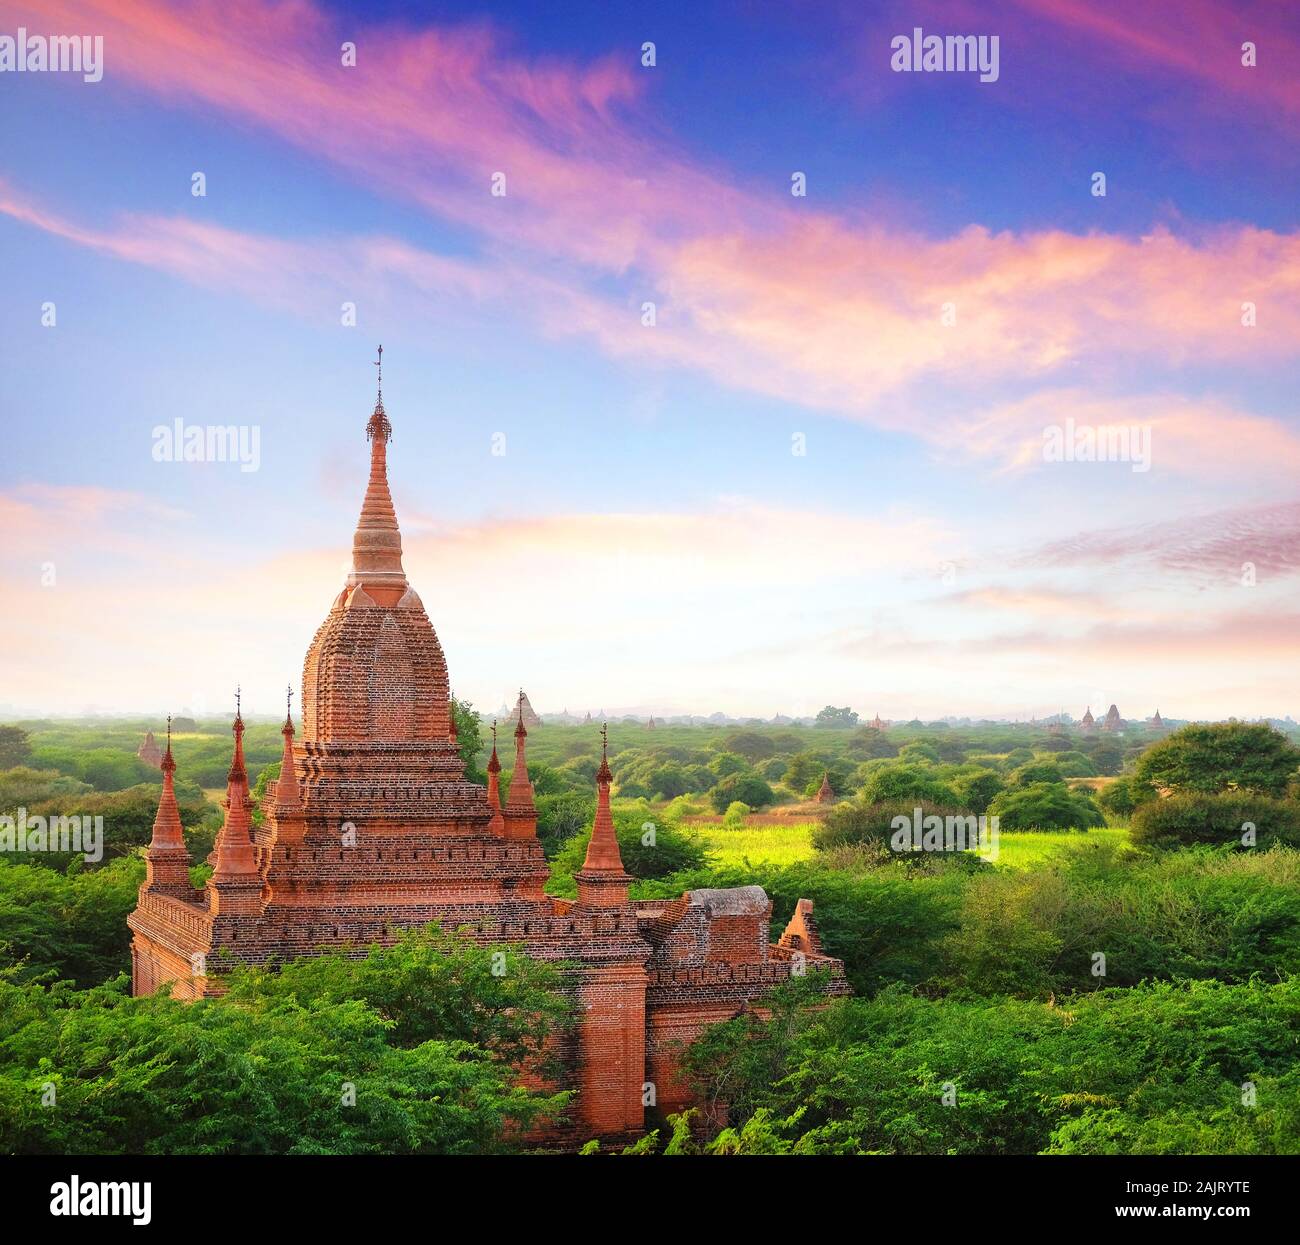 Farbenfrohe blaue und rote sunrise Himmel über alte buddhistische Tempel von grüner Vegetation im Old Bagan, Myanmar umgeben. Stockfoto